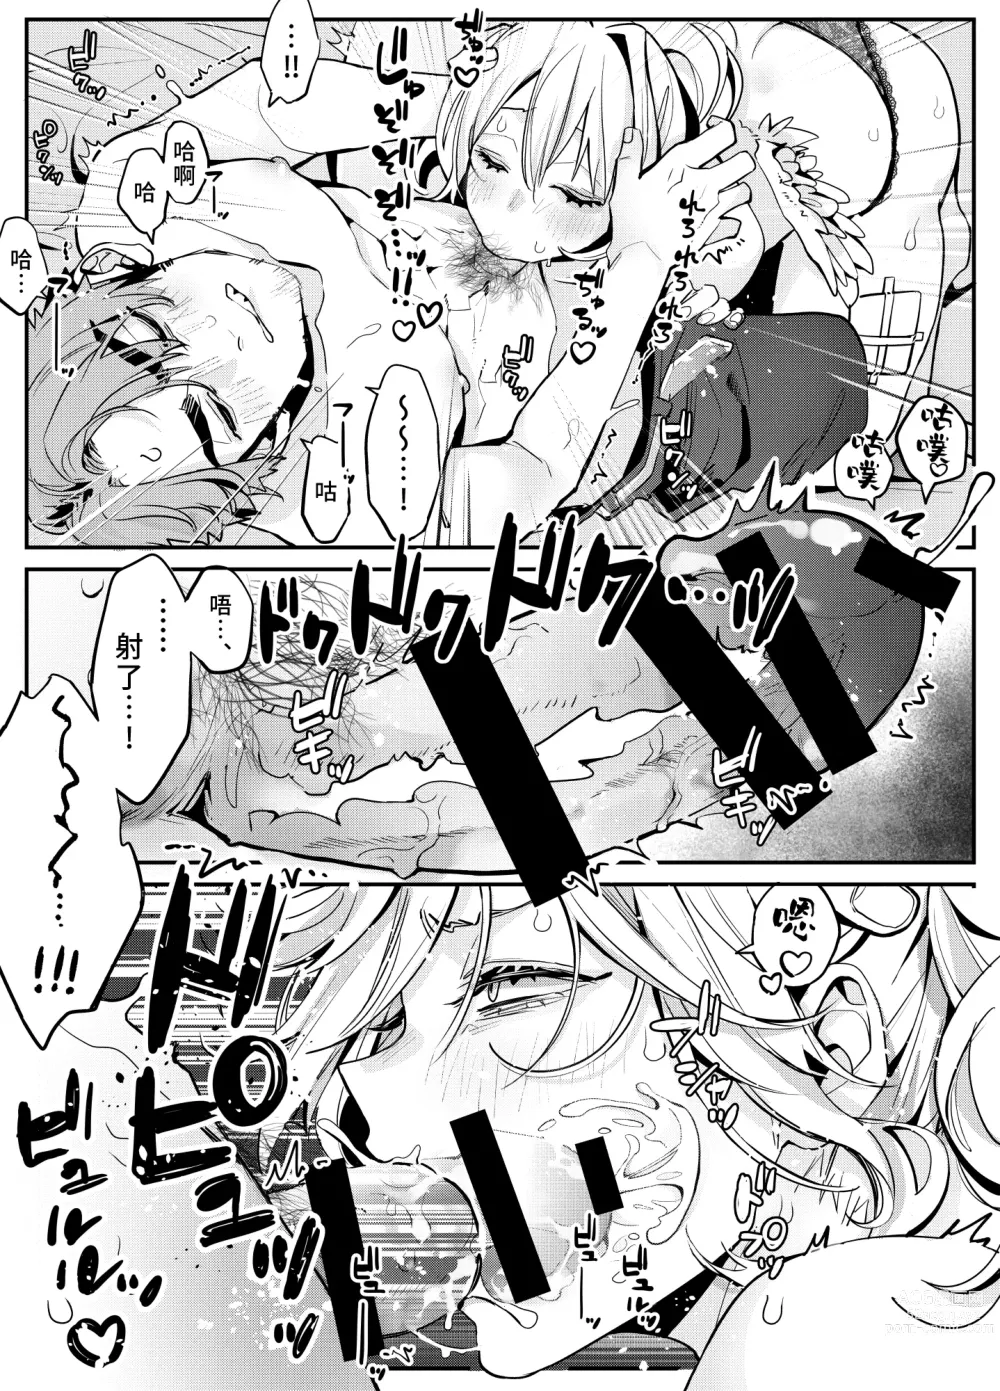 Page 6 of manga 关于沉浸在激烈口交游戏中将浓精射入嘴里的恋人的事